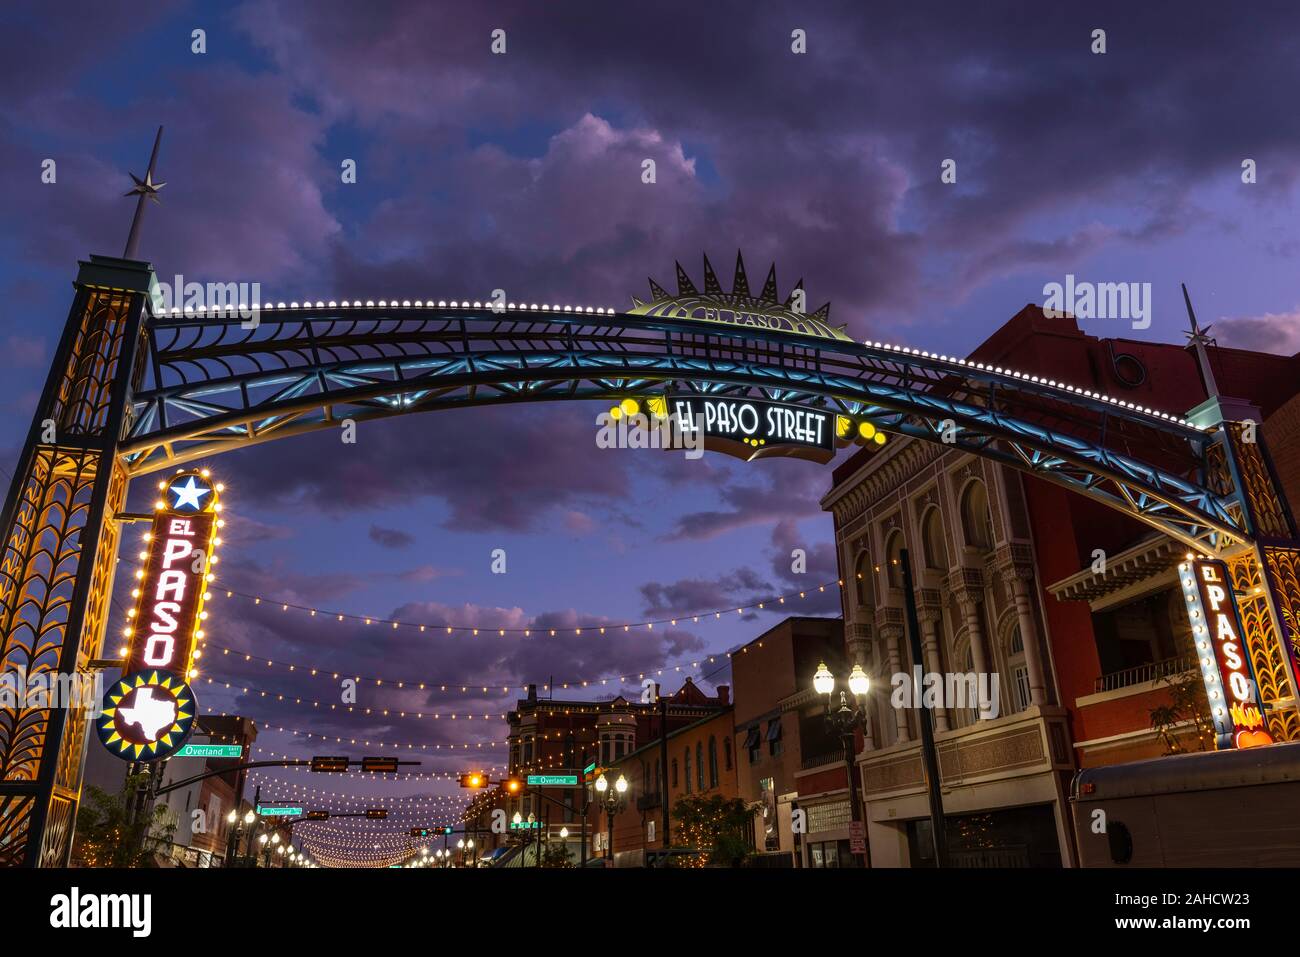 El Paso Street arch, El Paso, Texas Stock Photo